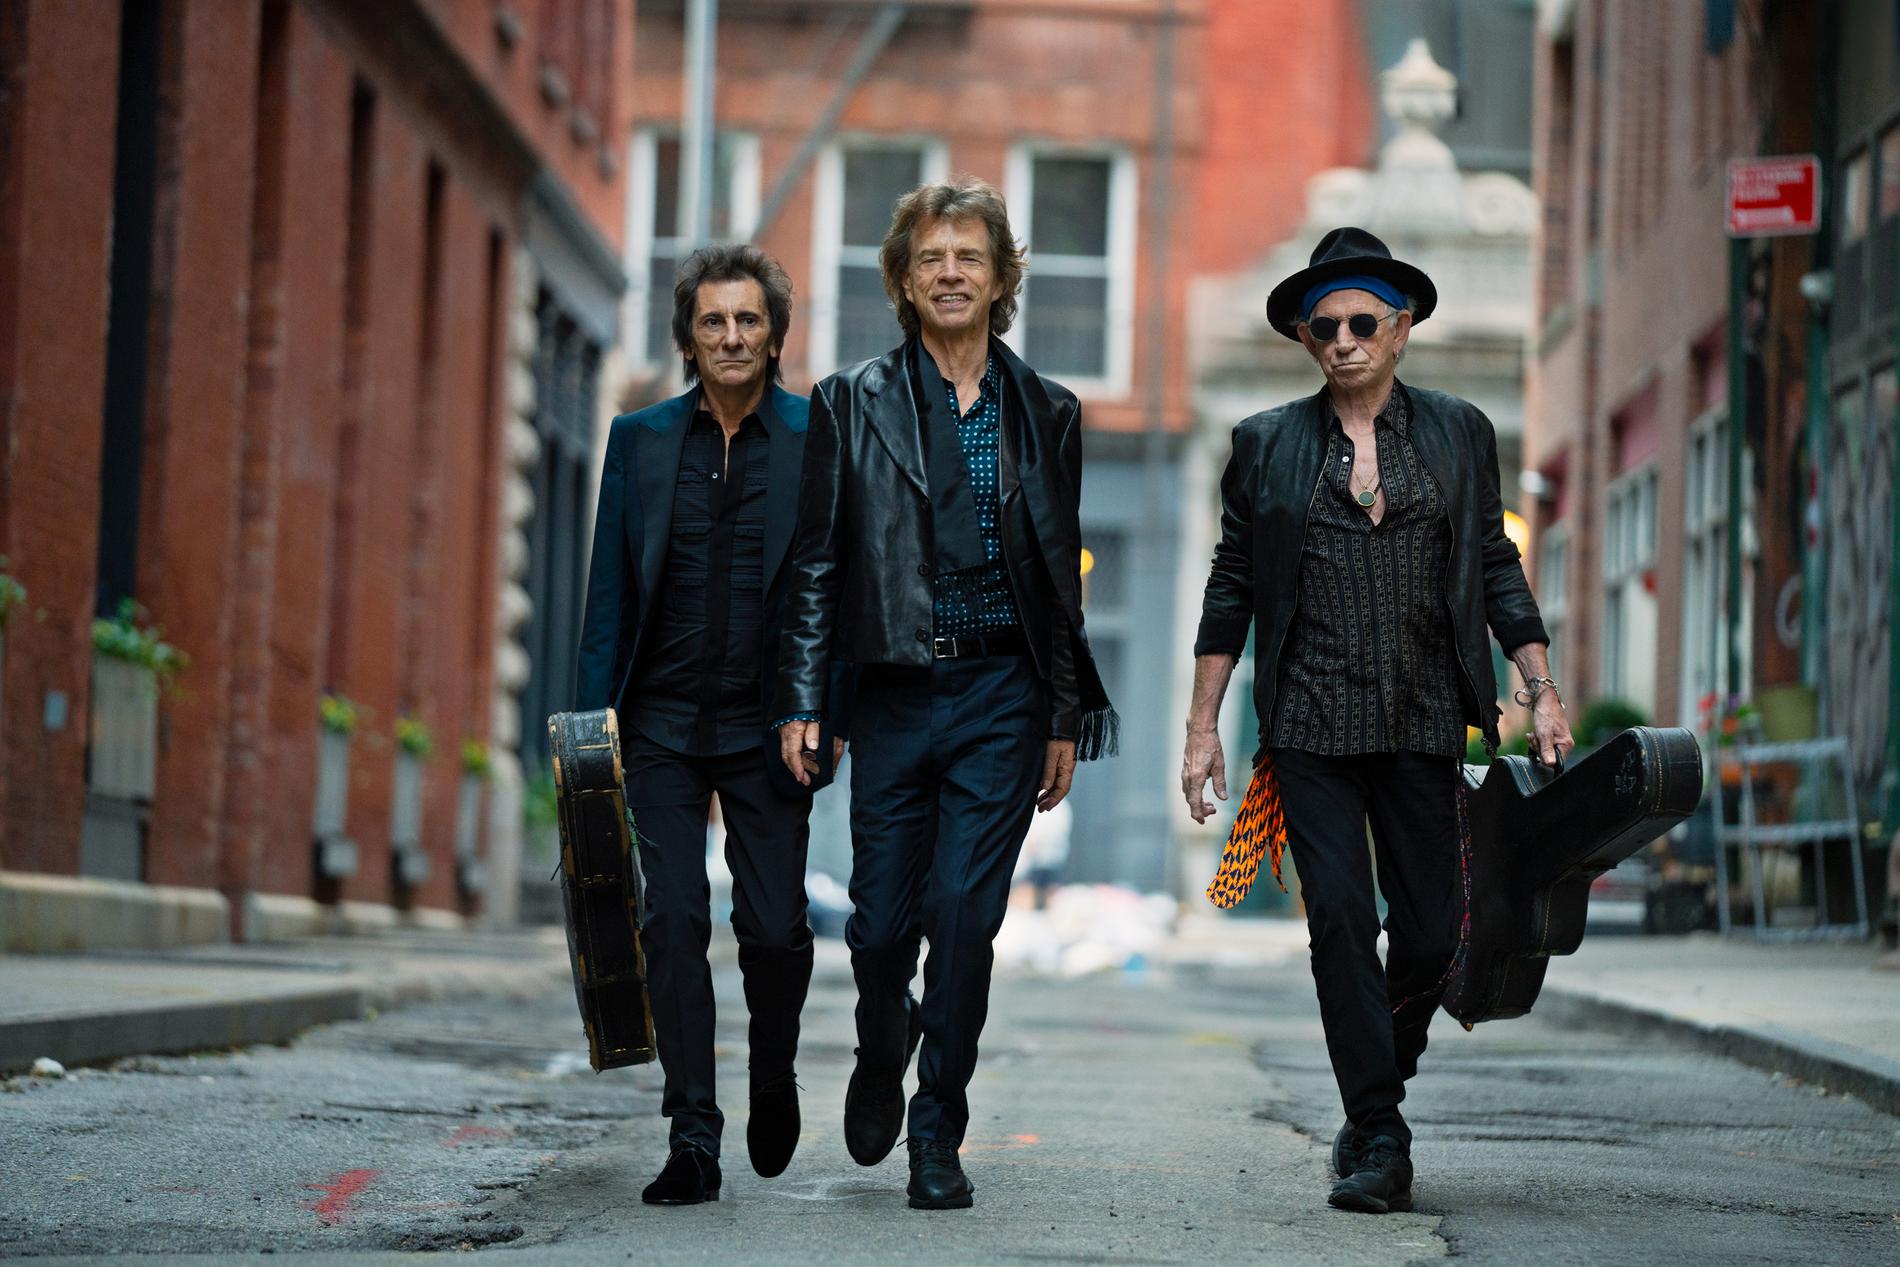 Recensione dell’album “Hackney Diamonds” dei Rolling Stones: gli anziani si divertono